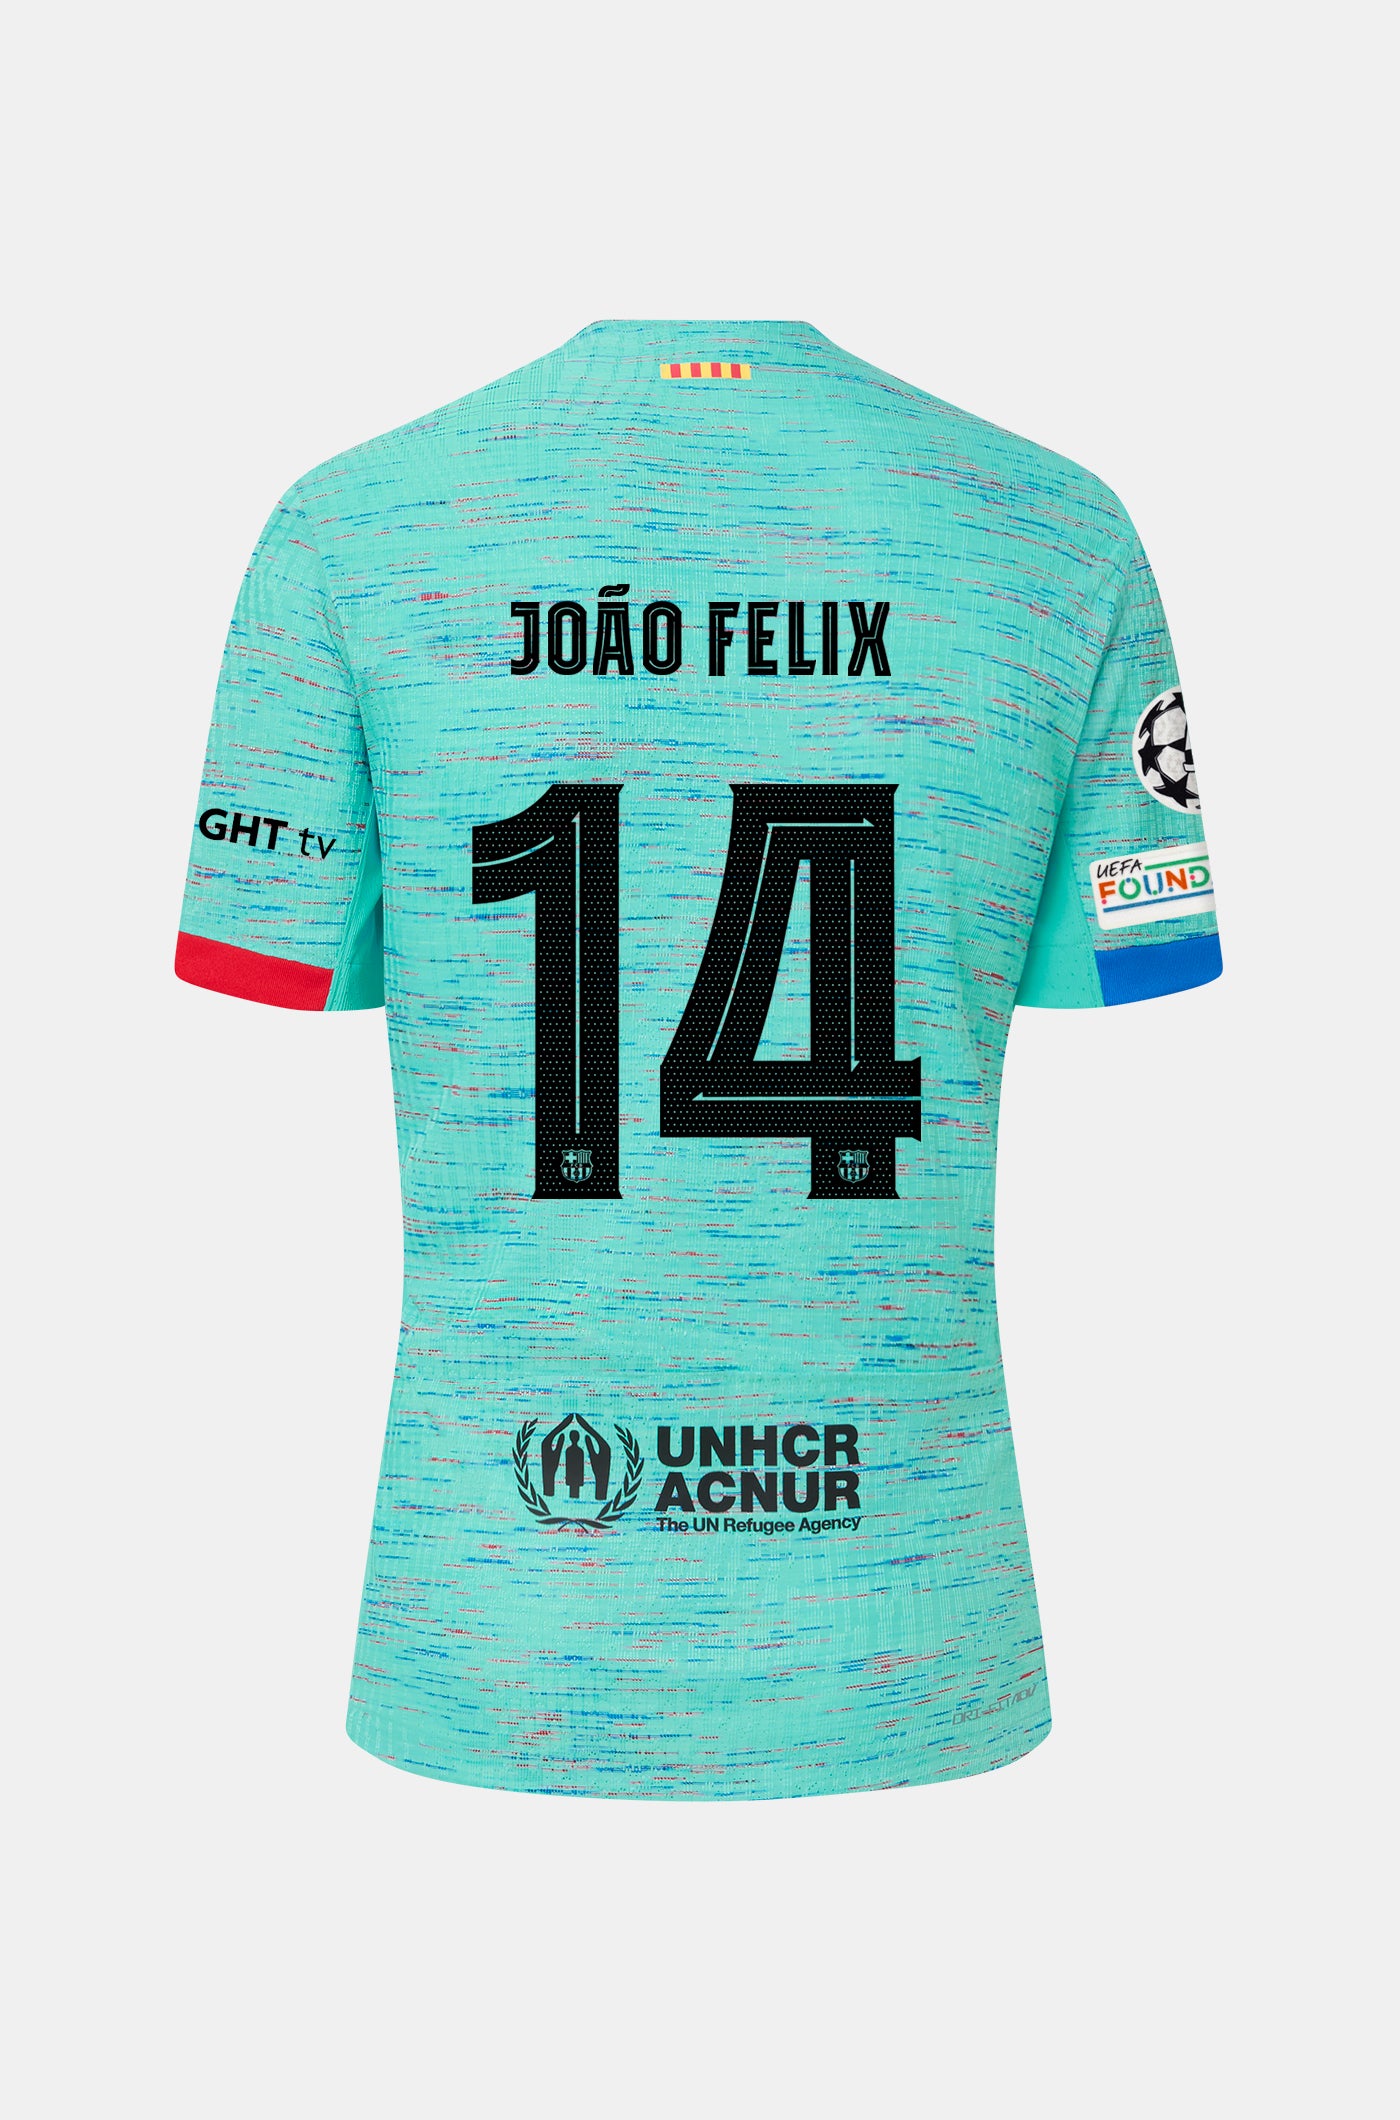 UCL FC Barcelona third shirt 23/24 Player’s Edition - JOÃO FÉLIX